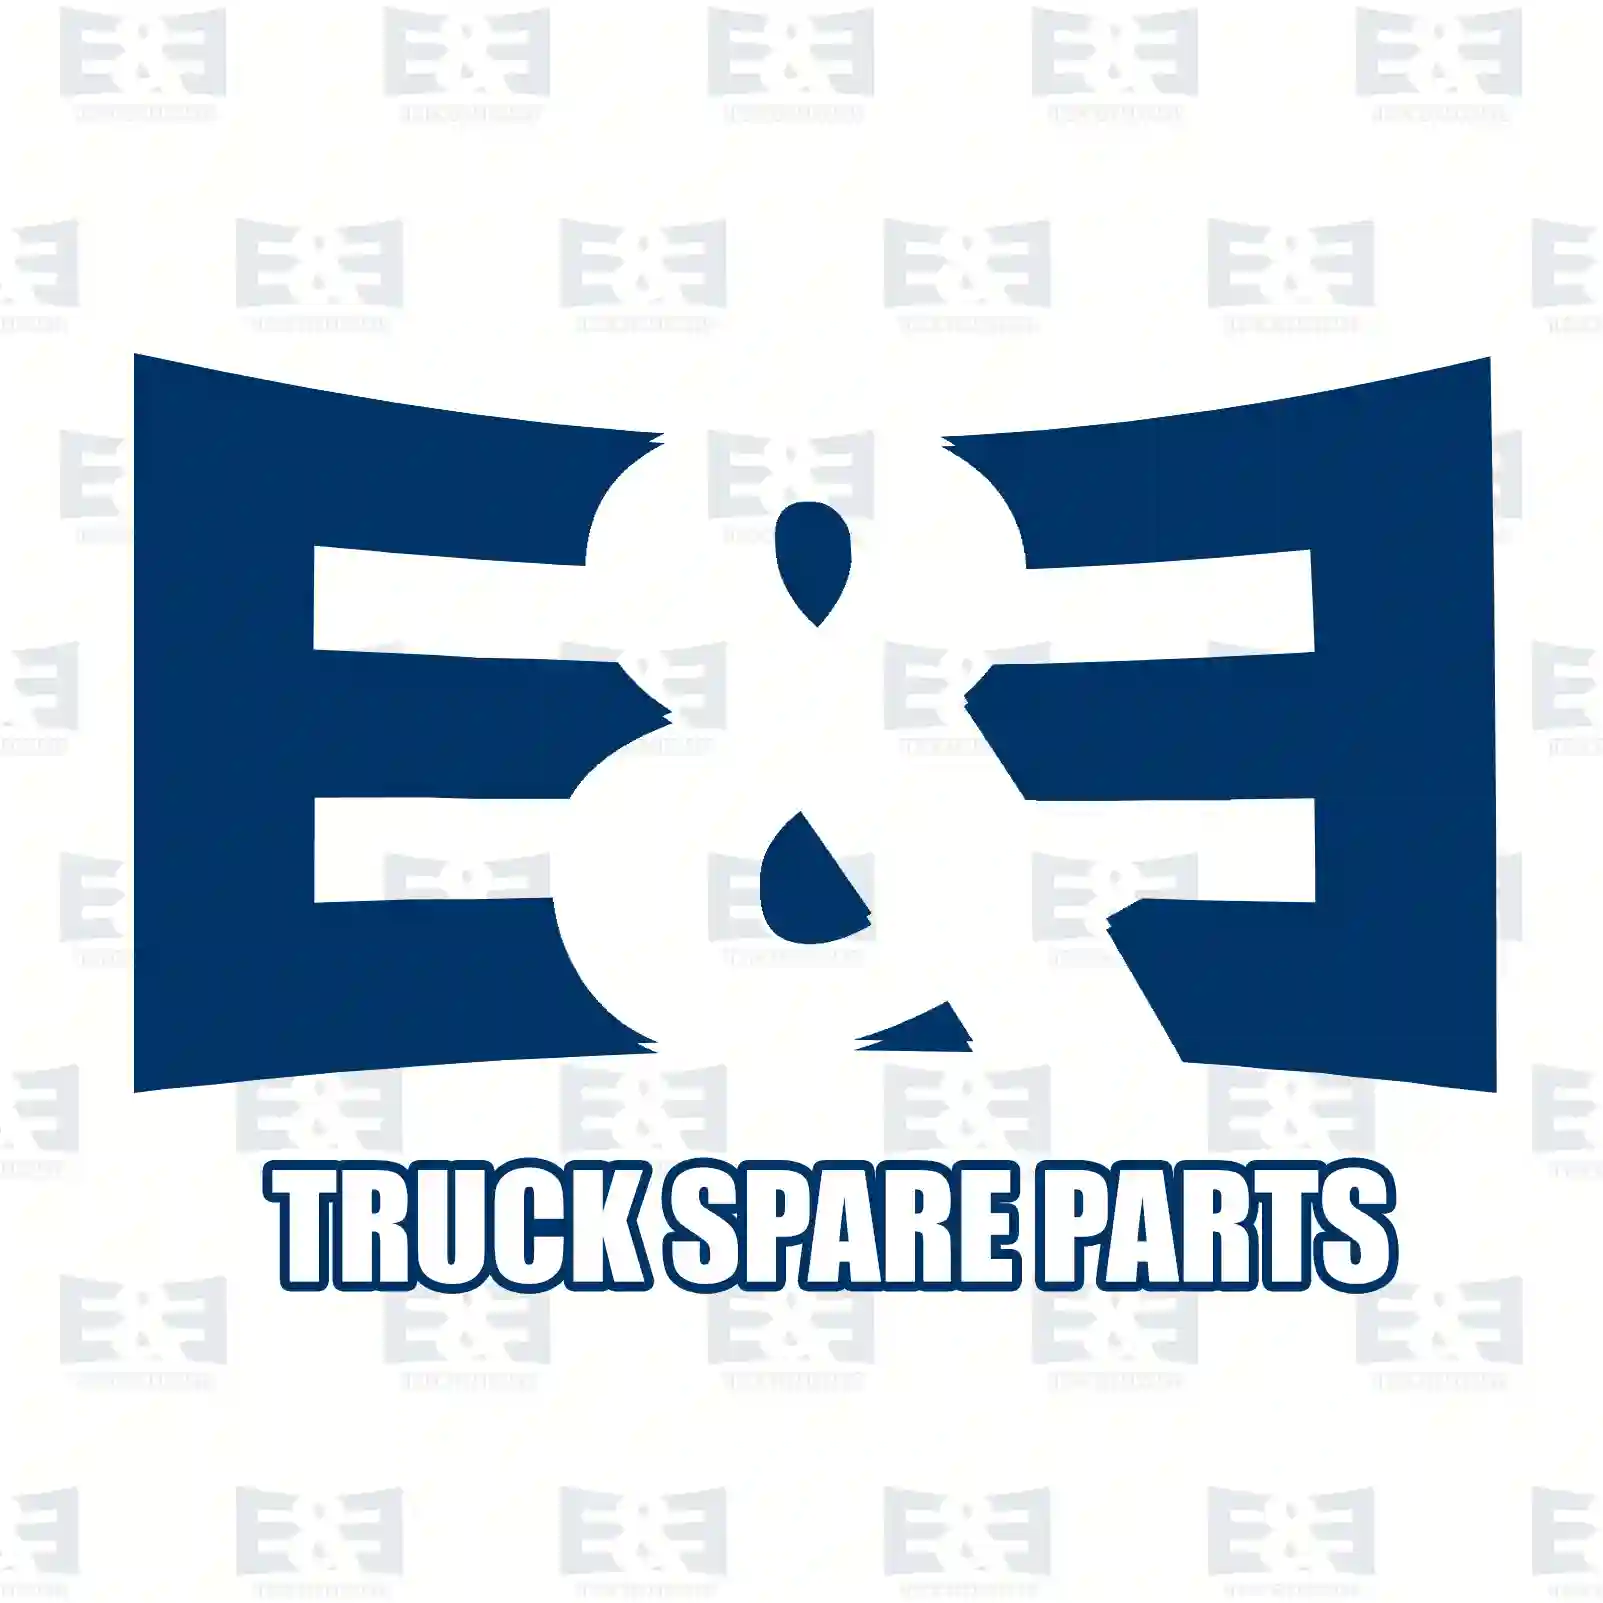 Control cable, Switching, 2E2277678, 7421080184, 2108 ||  2E2277678 E&E Truck Spare Parts | Truck Spare Parts, Auotomotive Spare Parts Control cable, Switching, 2E2277678, 7421080184, 2108 ||  2E2277678 E&E Truck Spare Parts | Truck Spare Parts, Auotomotive Spare Parts